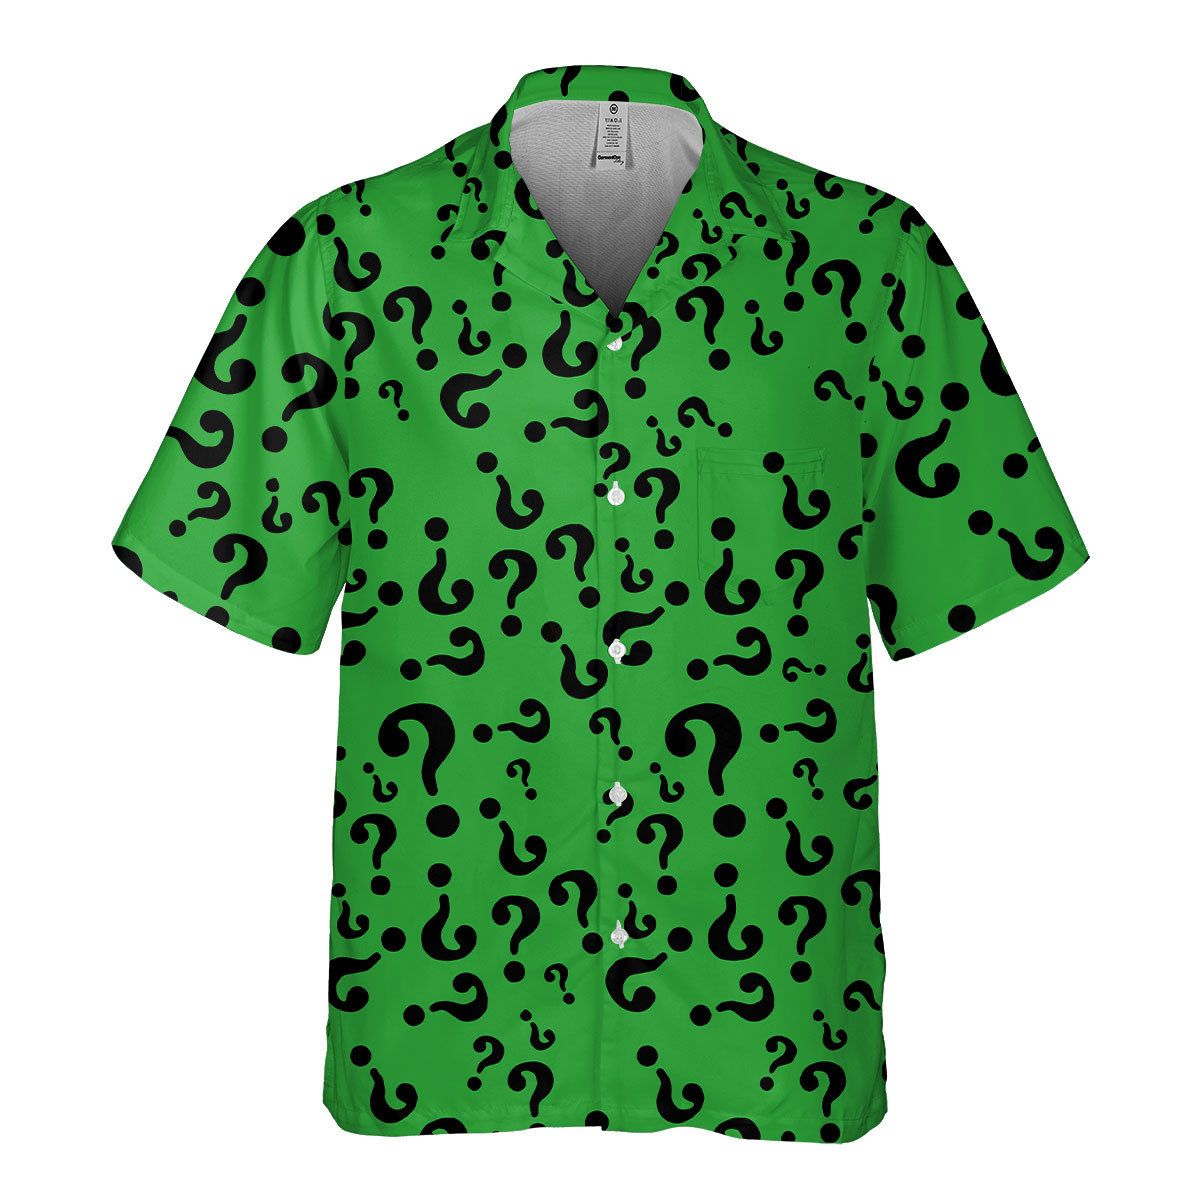 Riddler Supervillain Green Hawaiian Shirt - Meteew